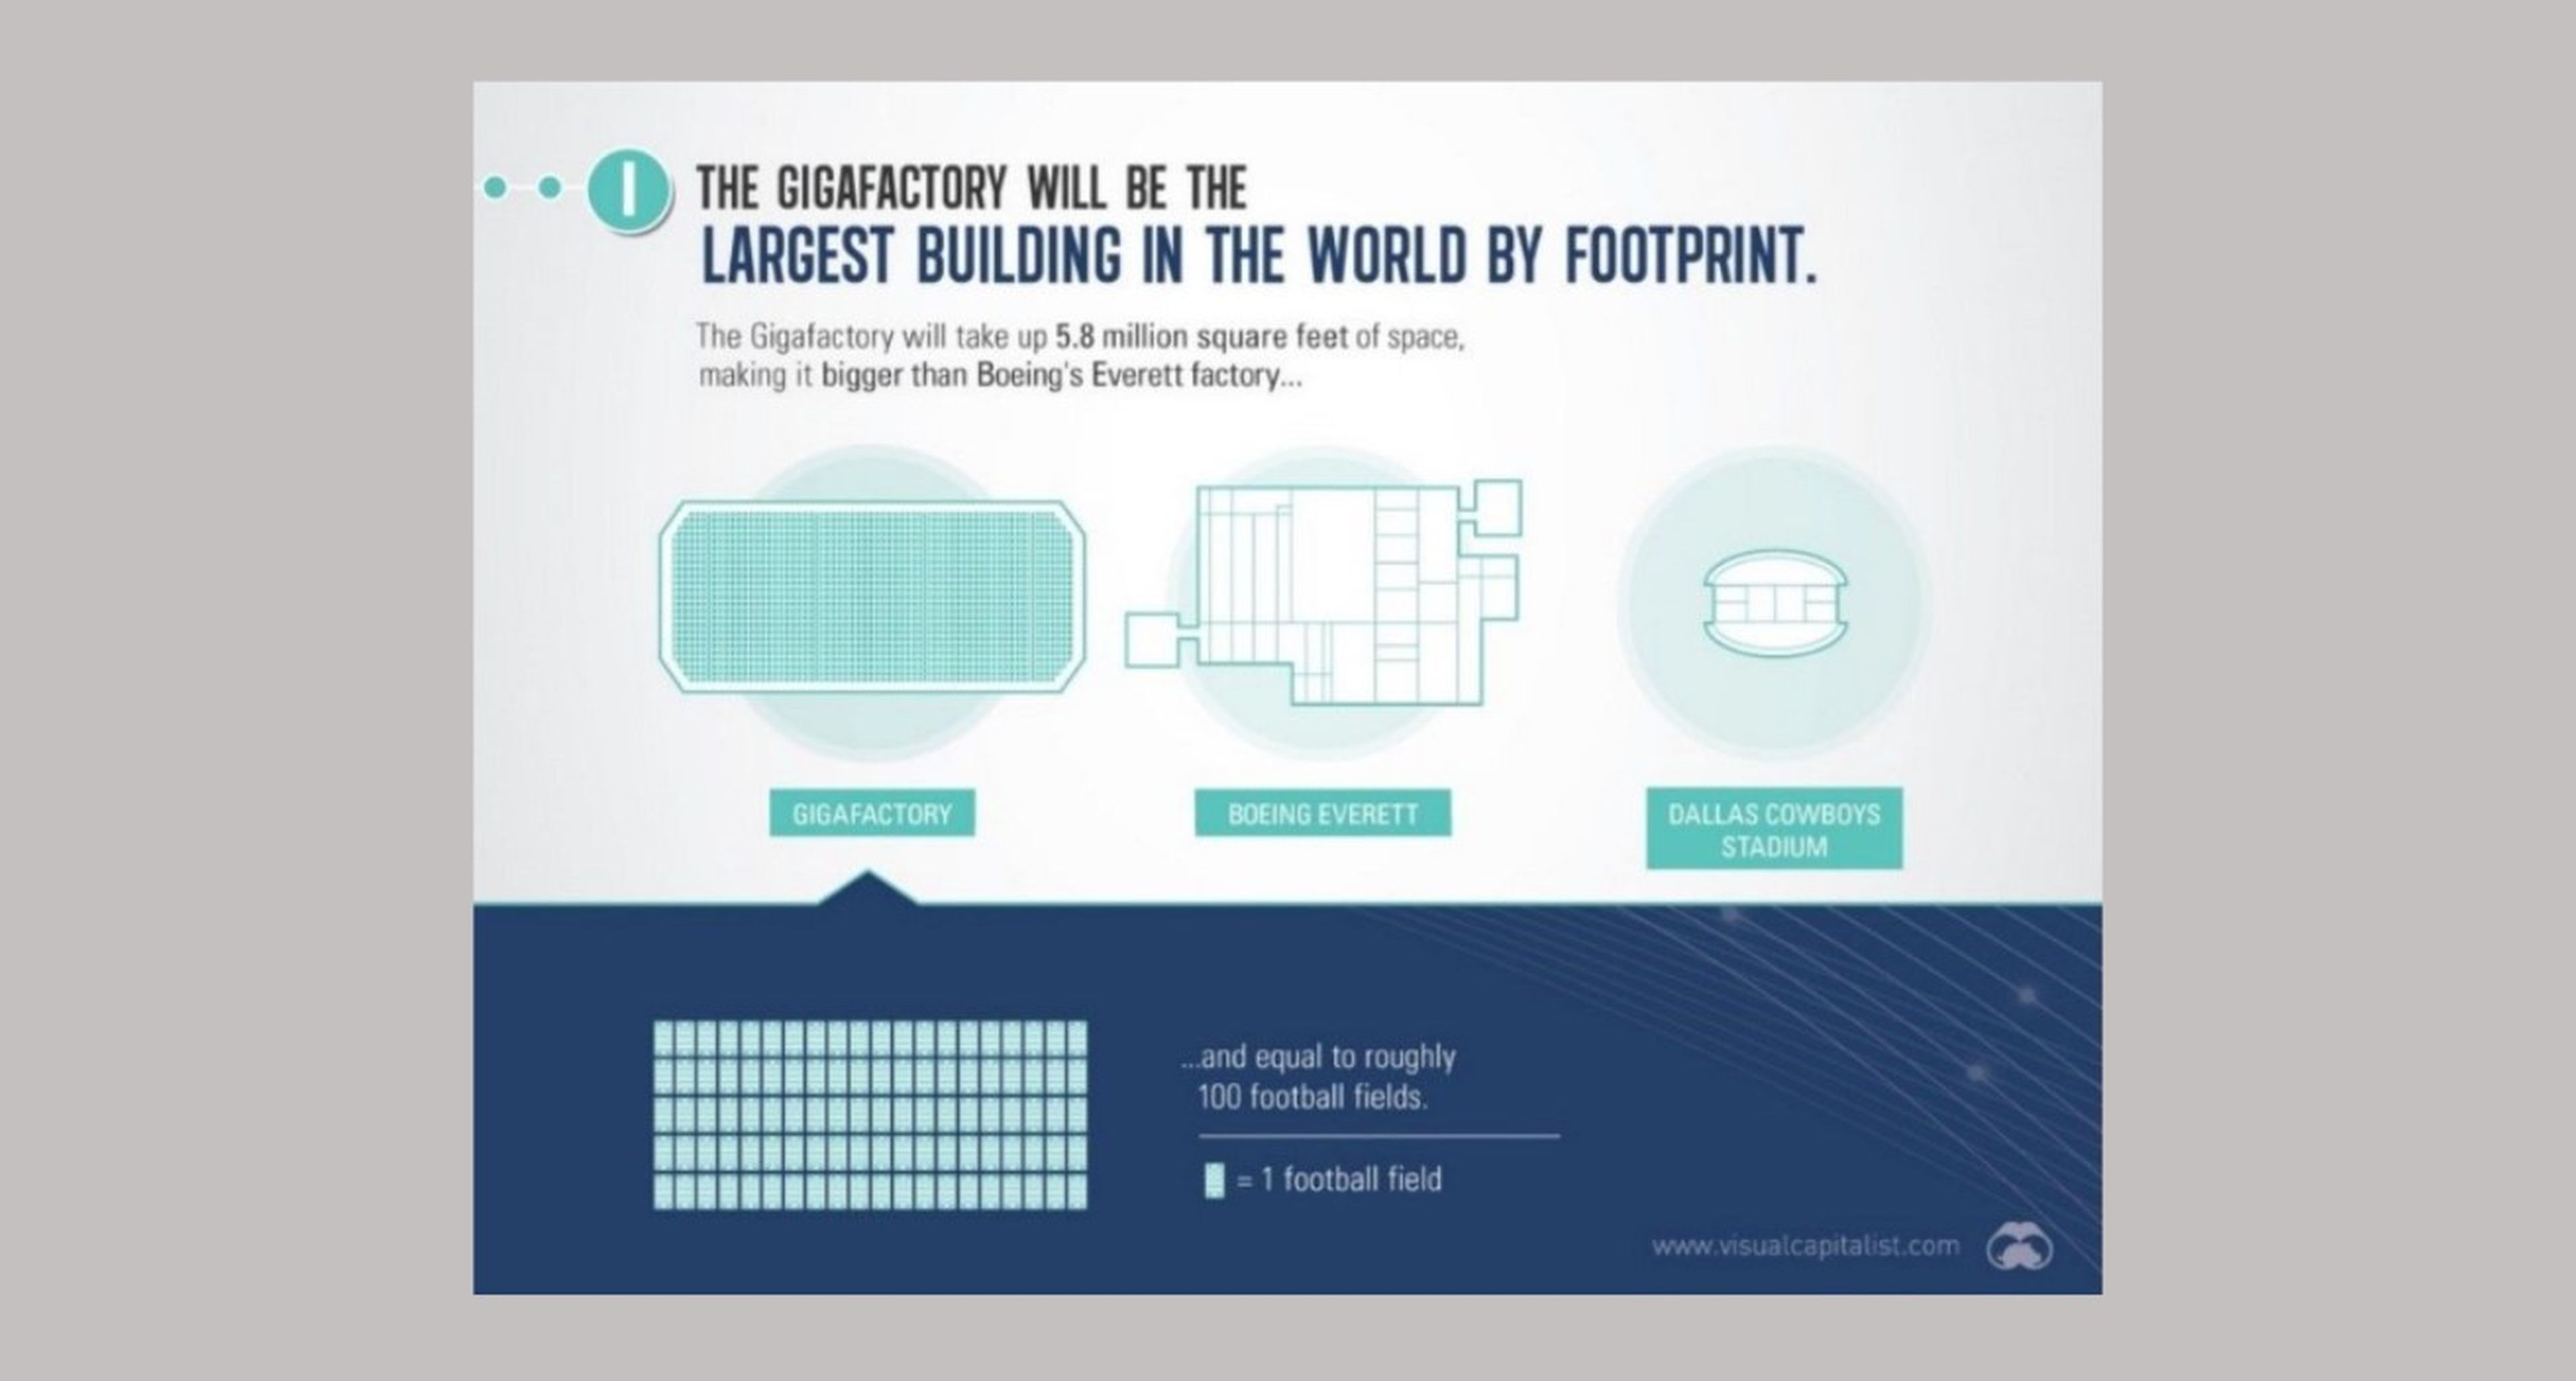 La "Gigafactoría" de Nevada terminada será el edificio más grande del mundo